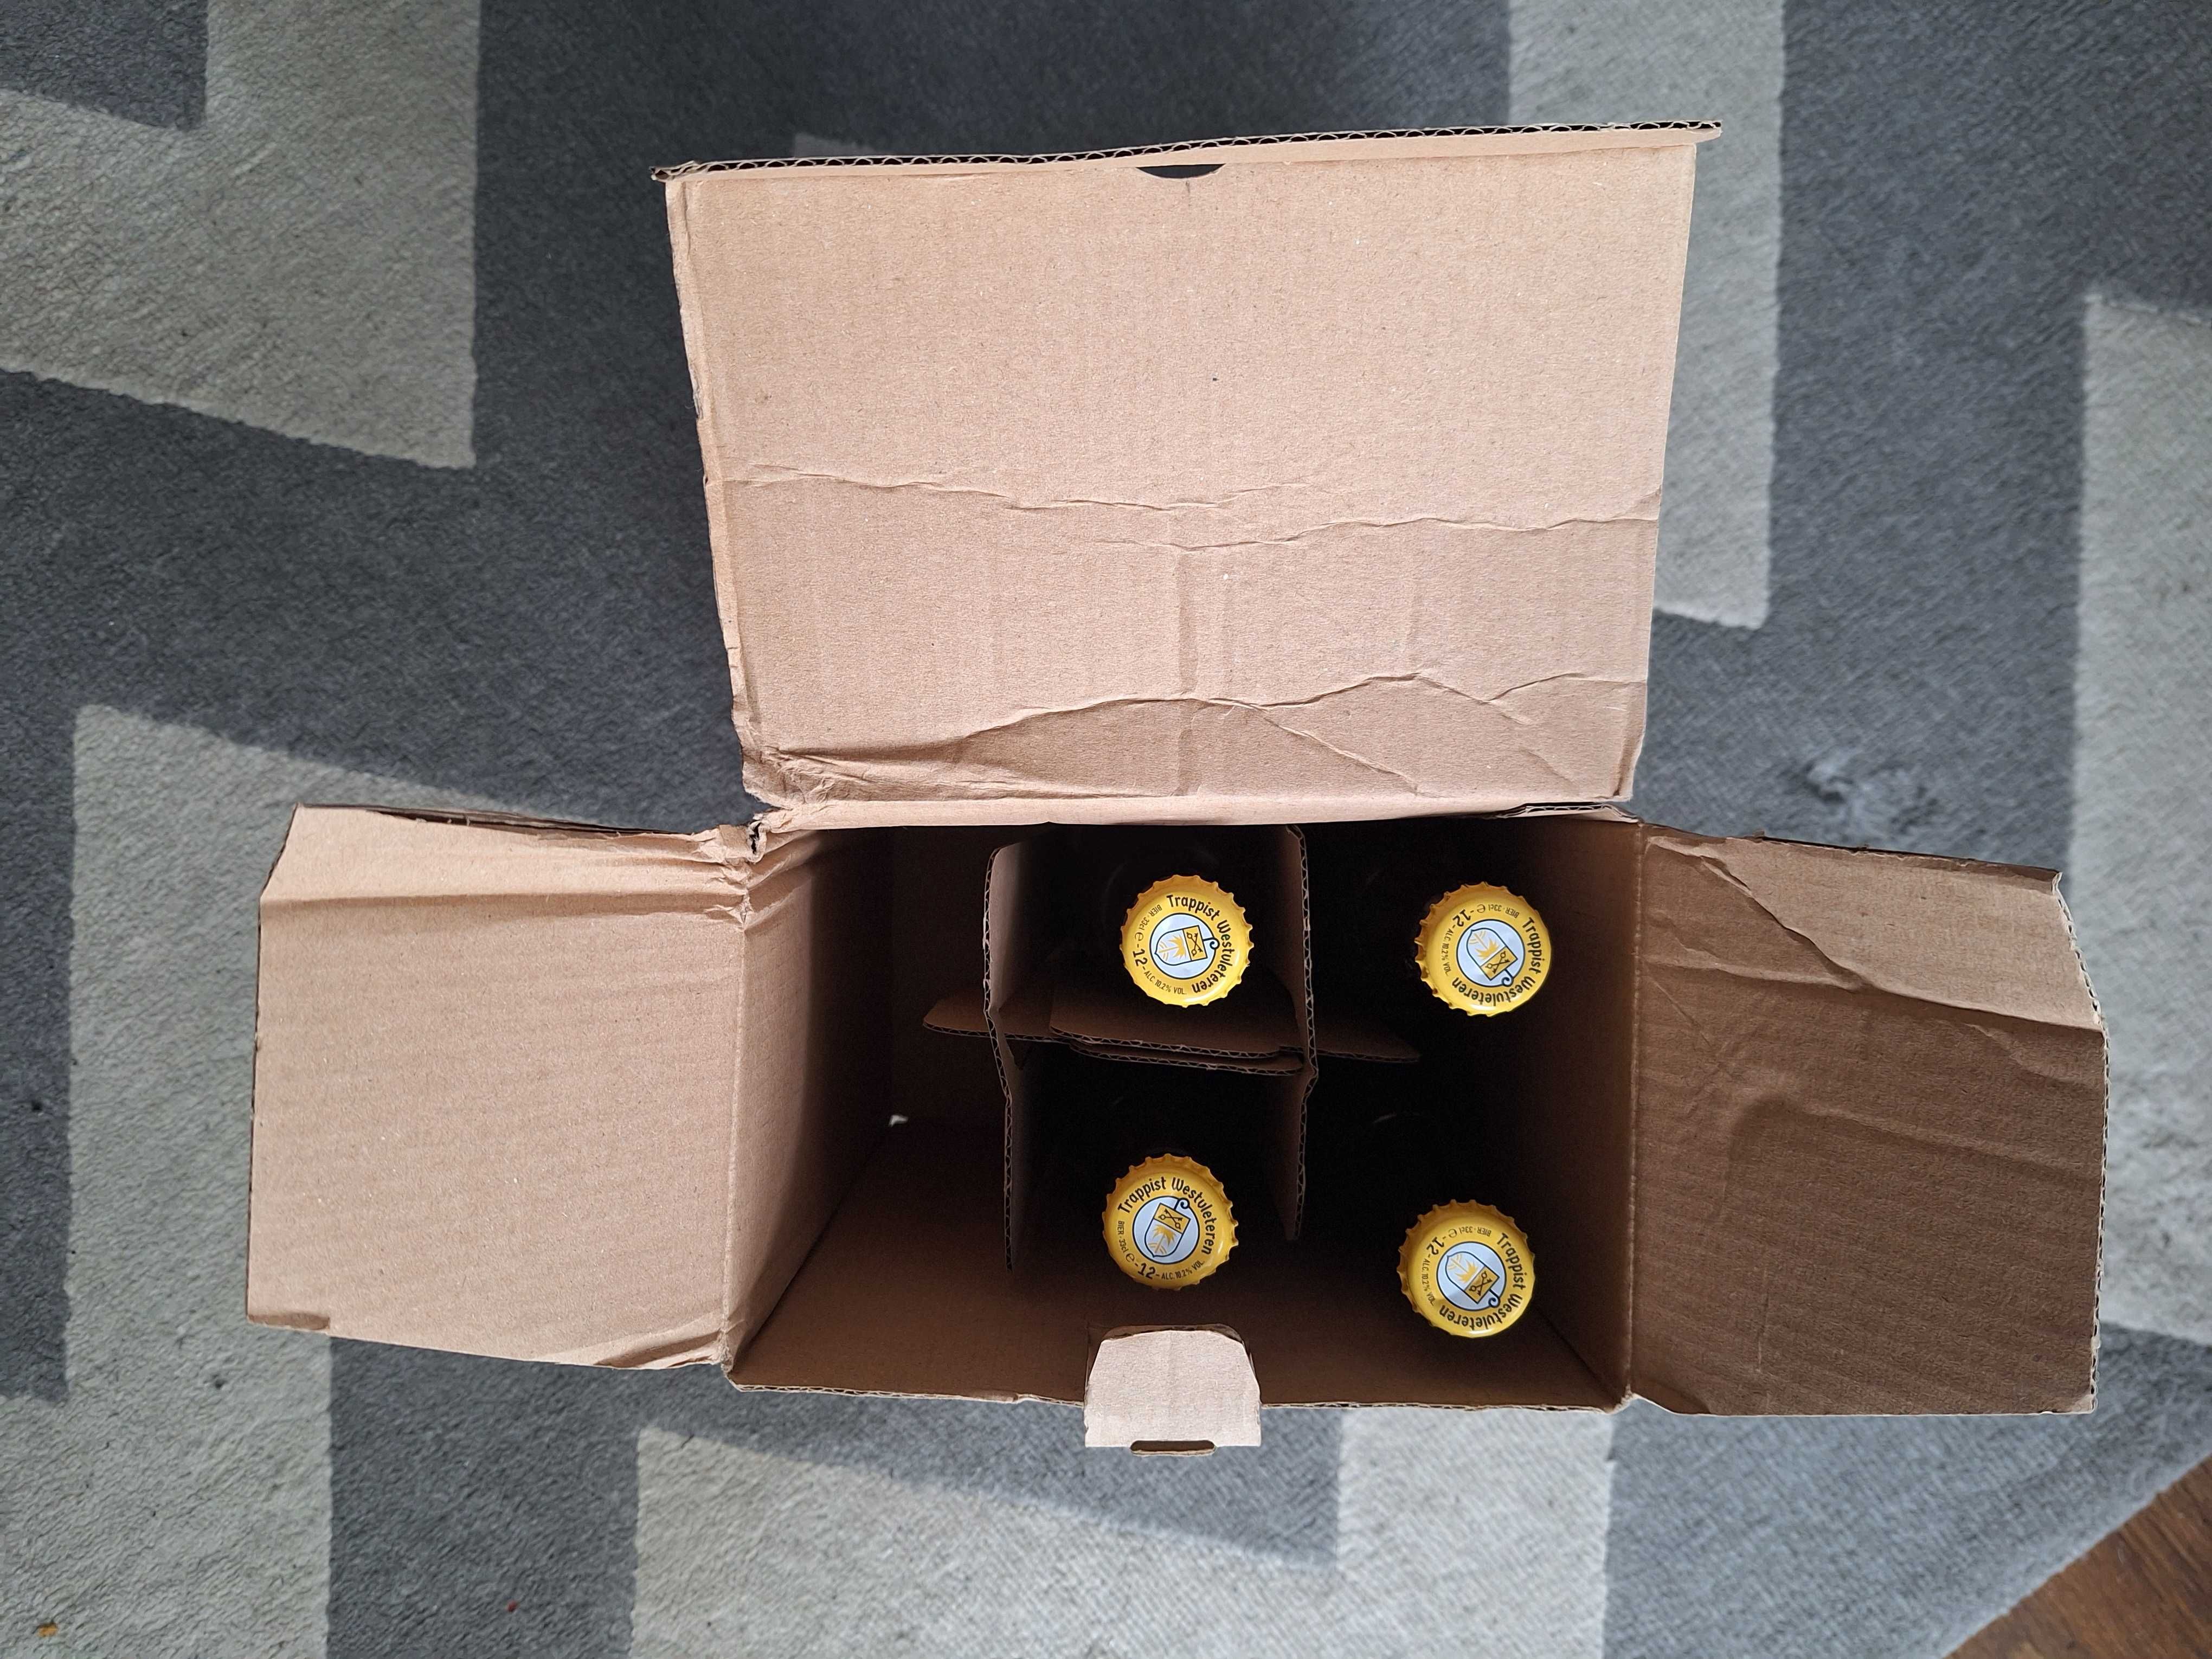 4szt butelek z kapslem, w kartonie - bezalkoholowego Westvleteren 12